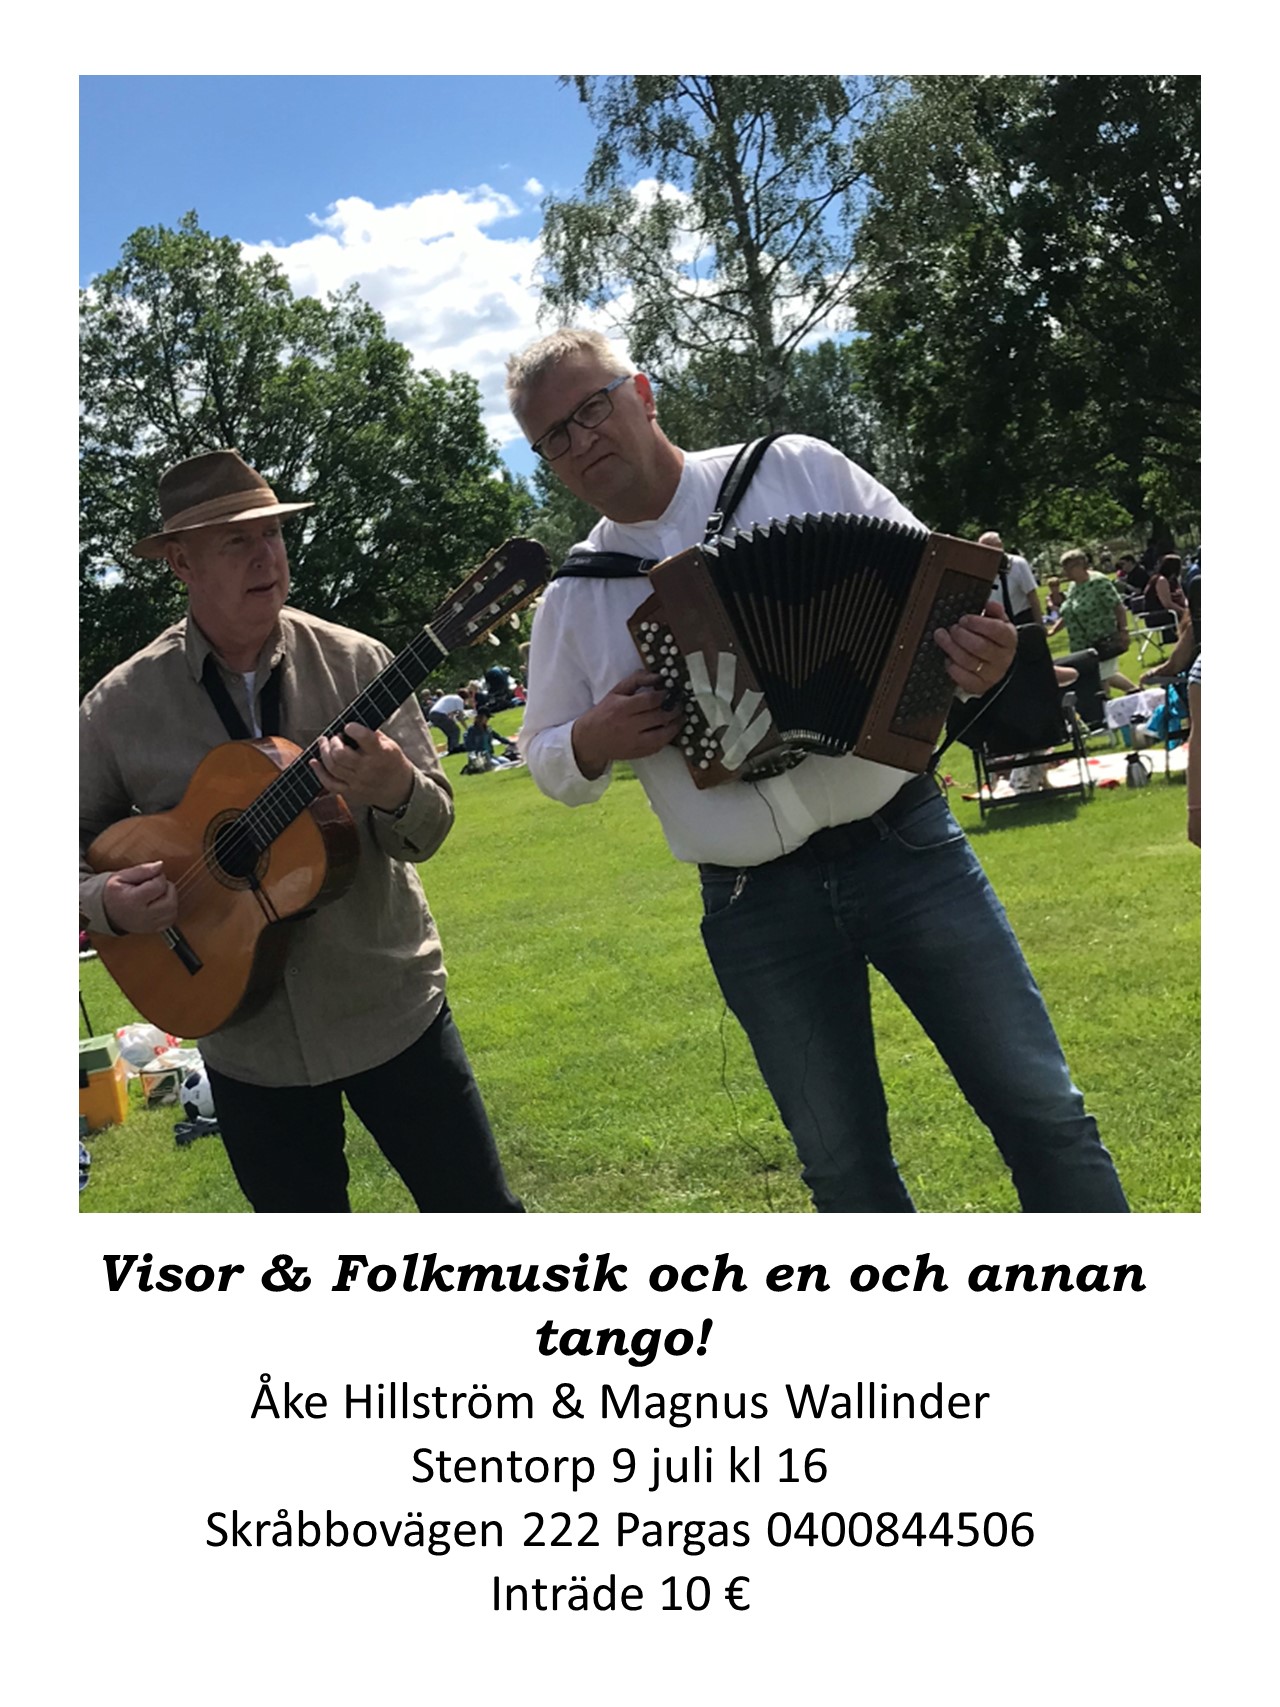 Åke Hillström och Magnus Walliander musicerar